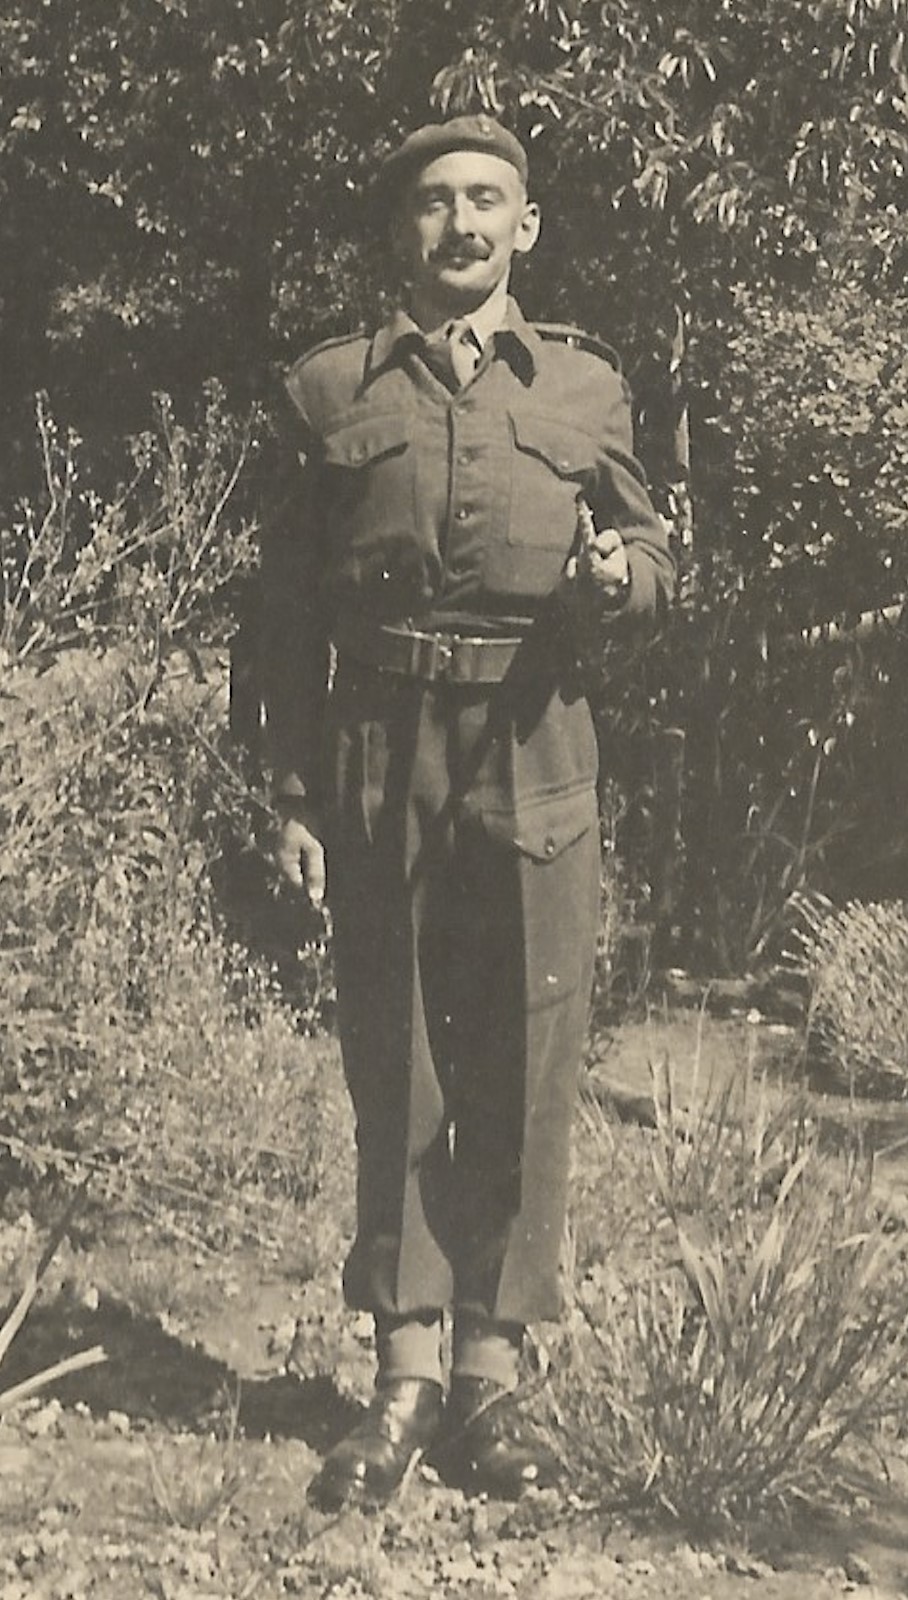 Edward Fingland in uniform